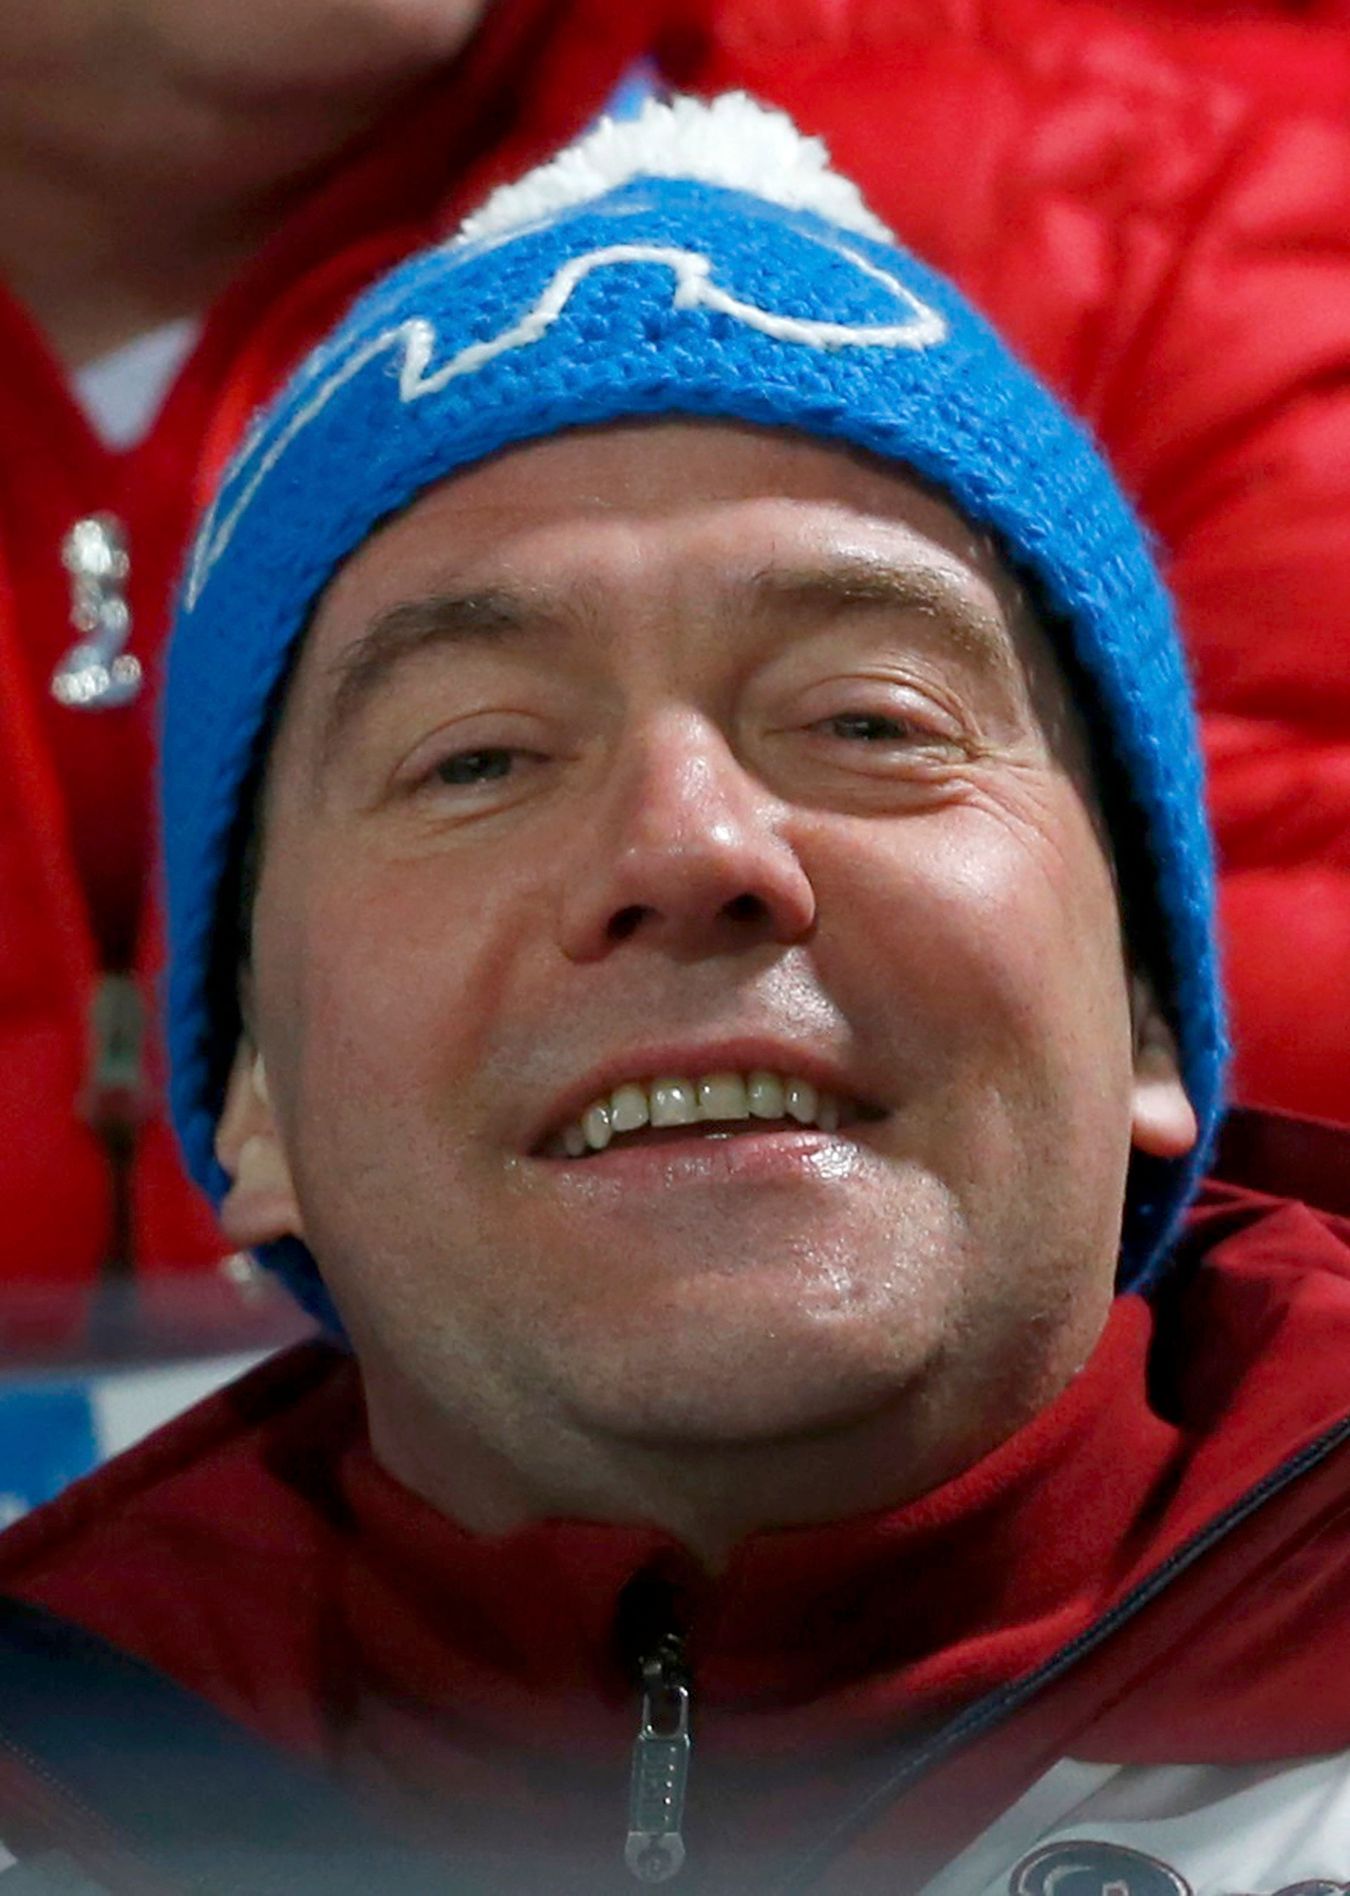 Soči 2014, skoky na lyžích: ruský premiér Dmitrij Medveděv